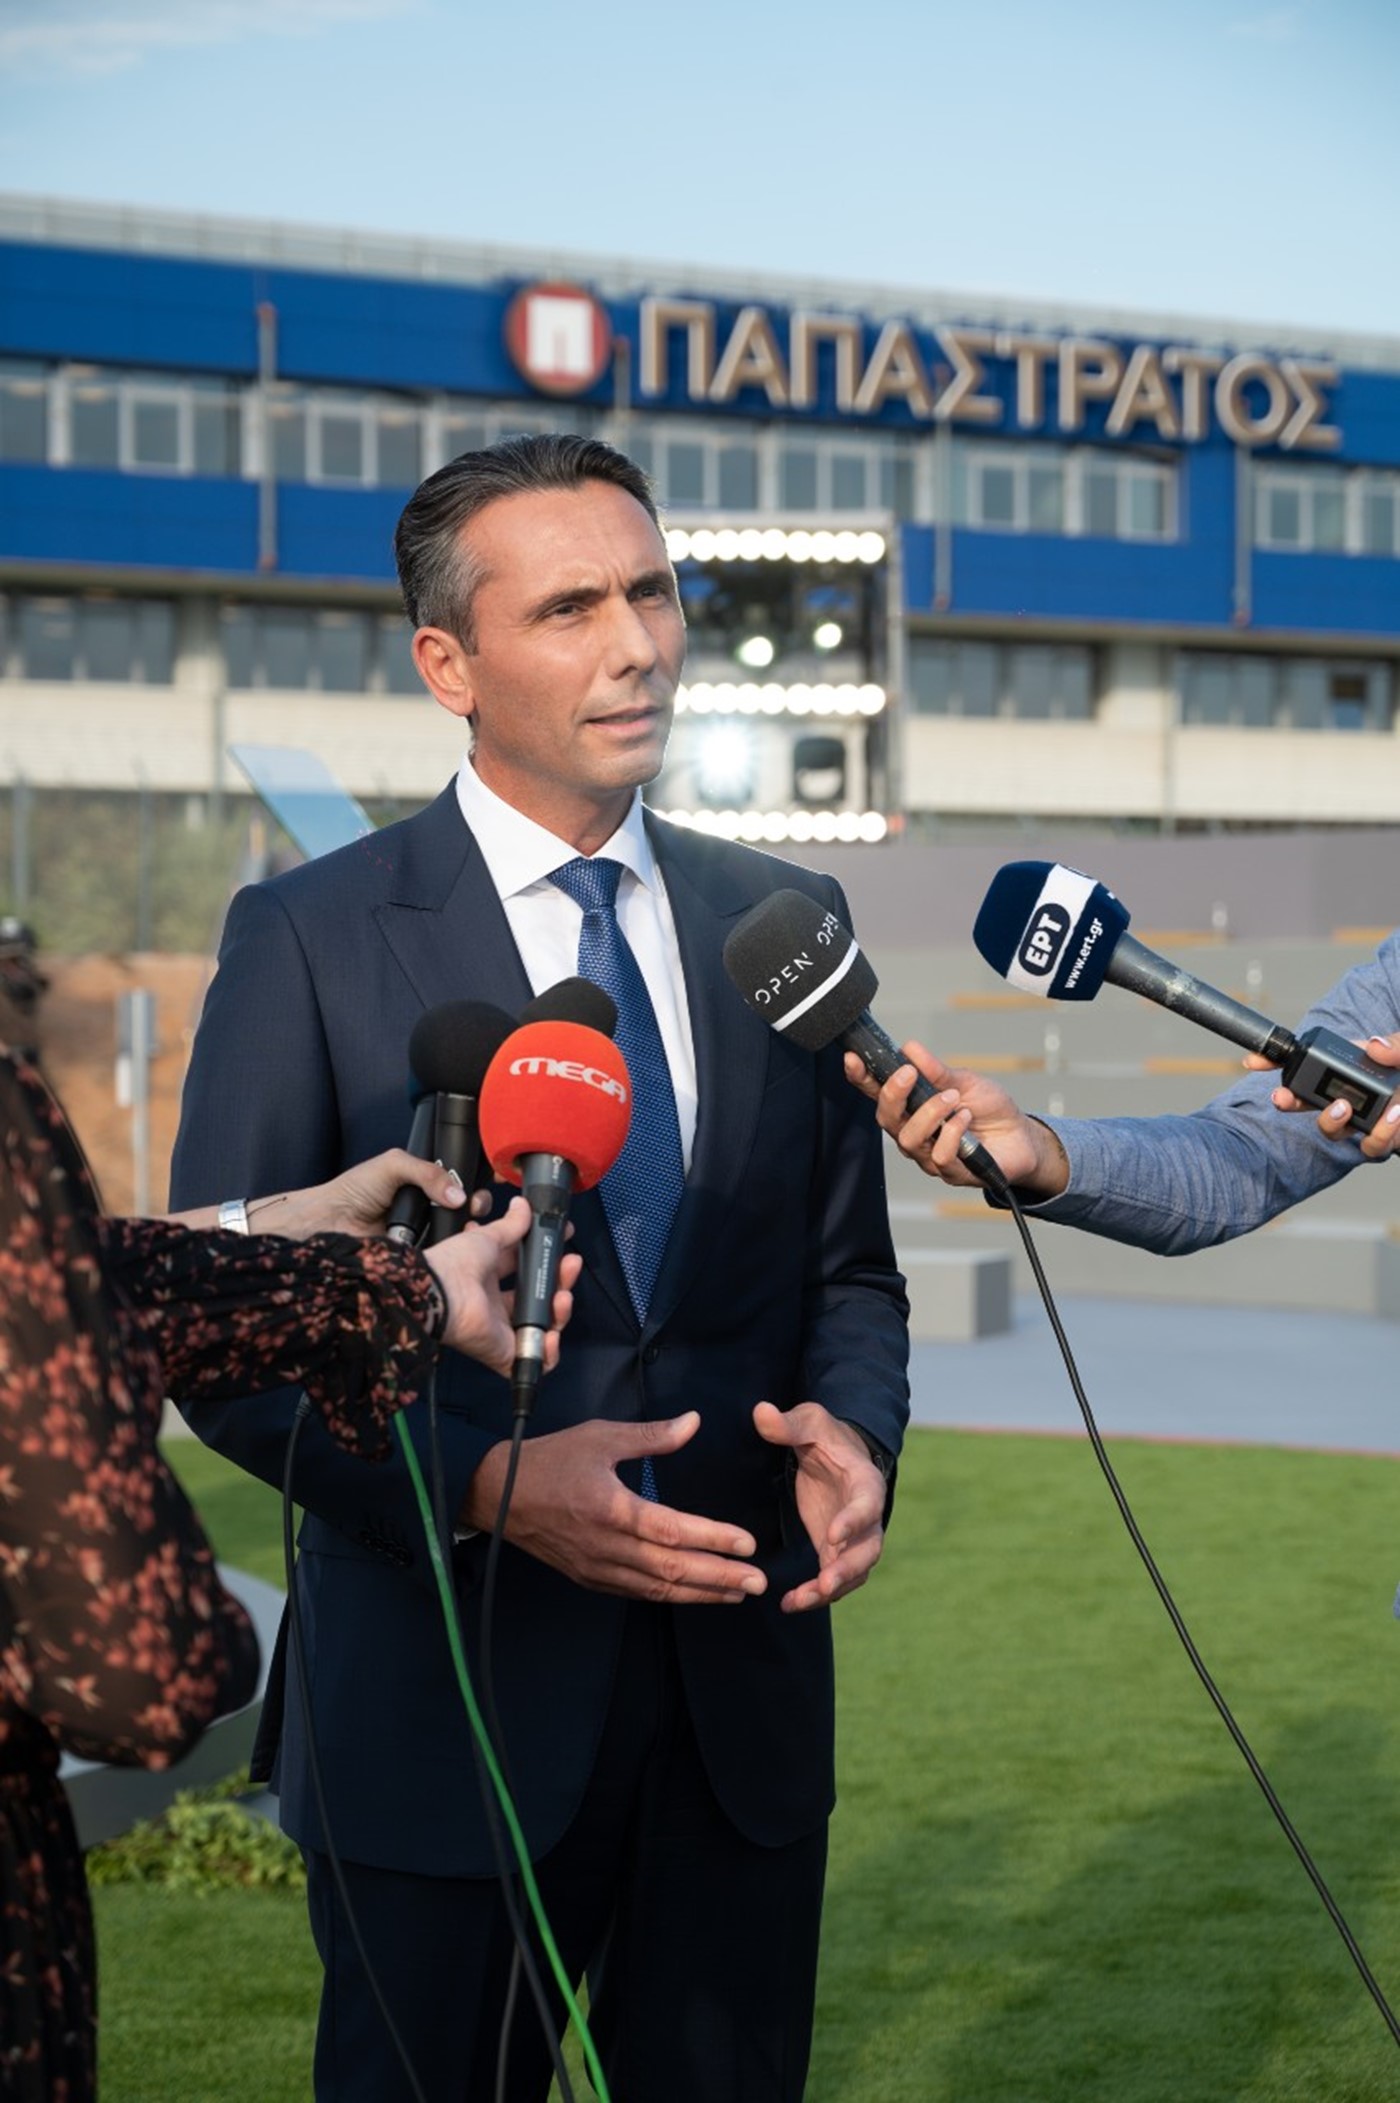 Ο Πρόεδρος και Διευθύνων Σύμβουλος της Παπαστράτος, κ. Χρήστος Χαρπαντίδης κάνει δηλώσεις στα ΜΜΕ